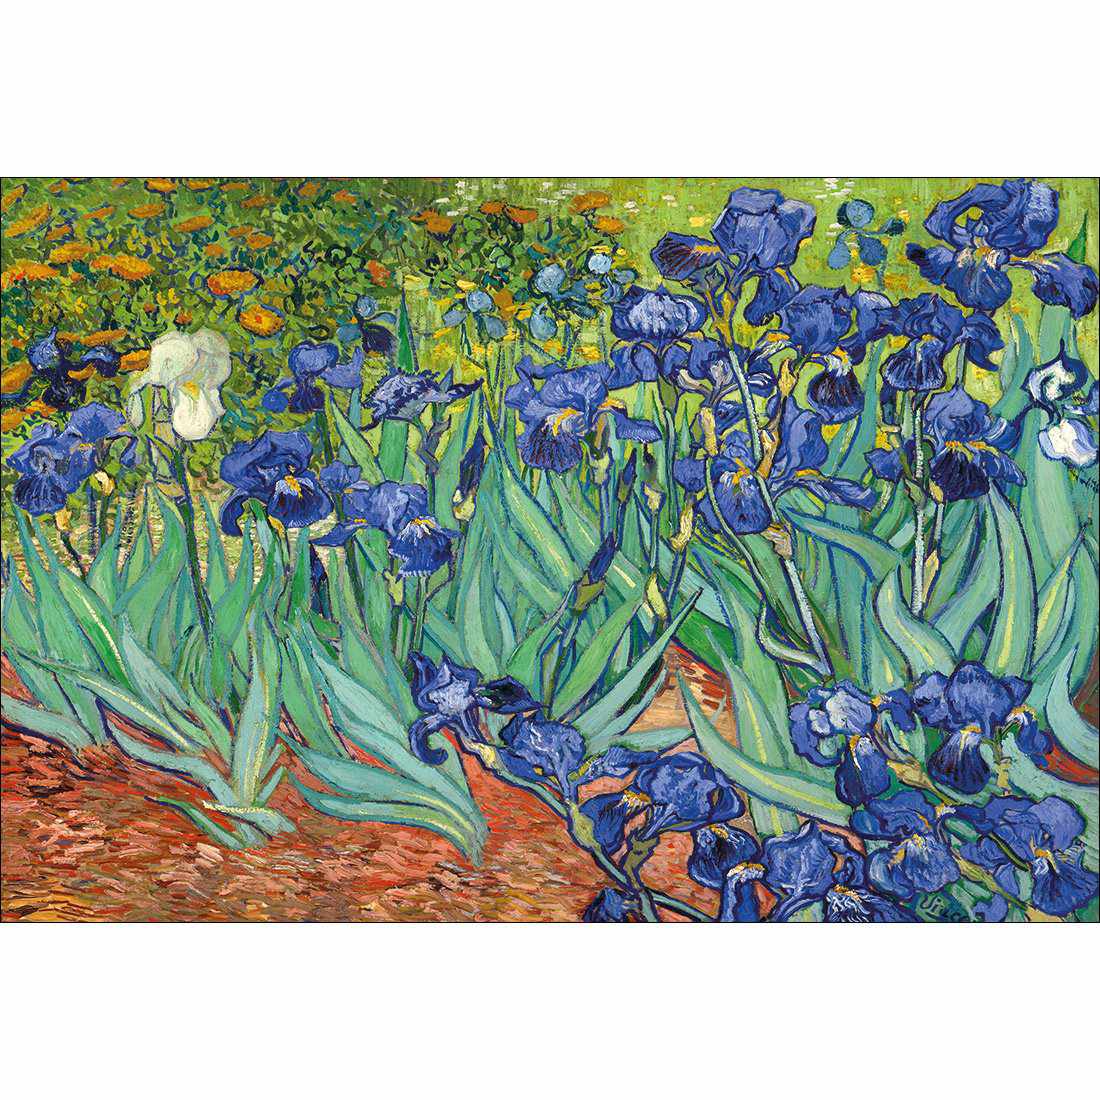 Irises 2 - Van Gogh Canvas Art-Canvas-Wall Art Designs-45x30cm-Canvas - No Frame-Wall Art Designs